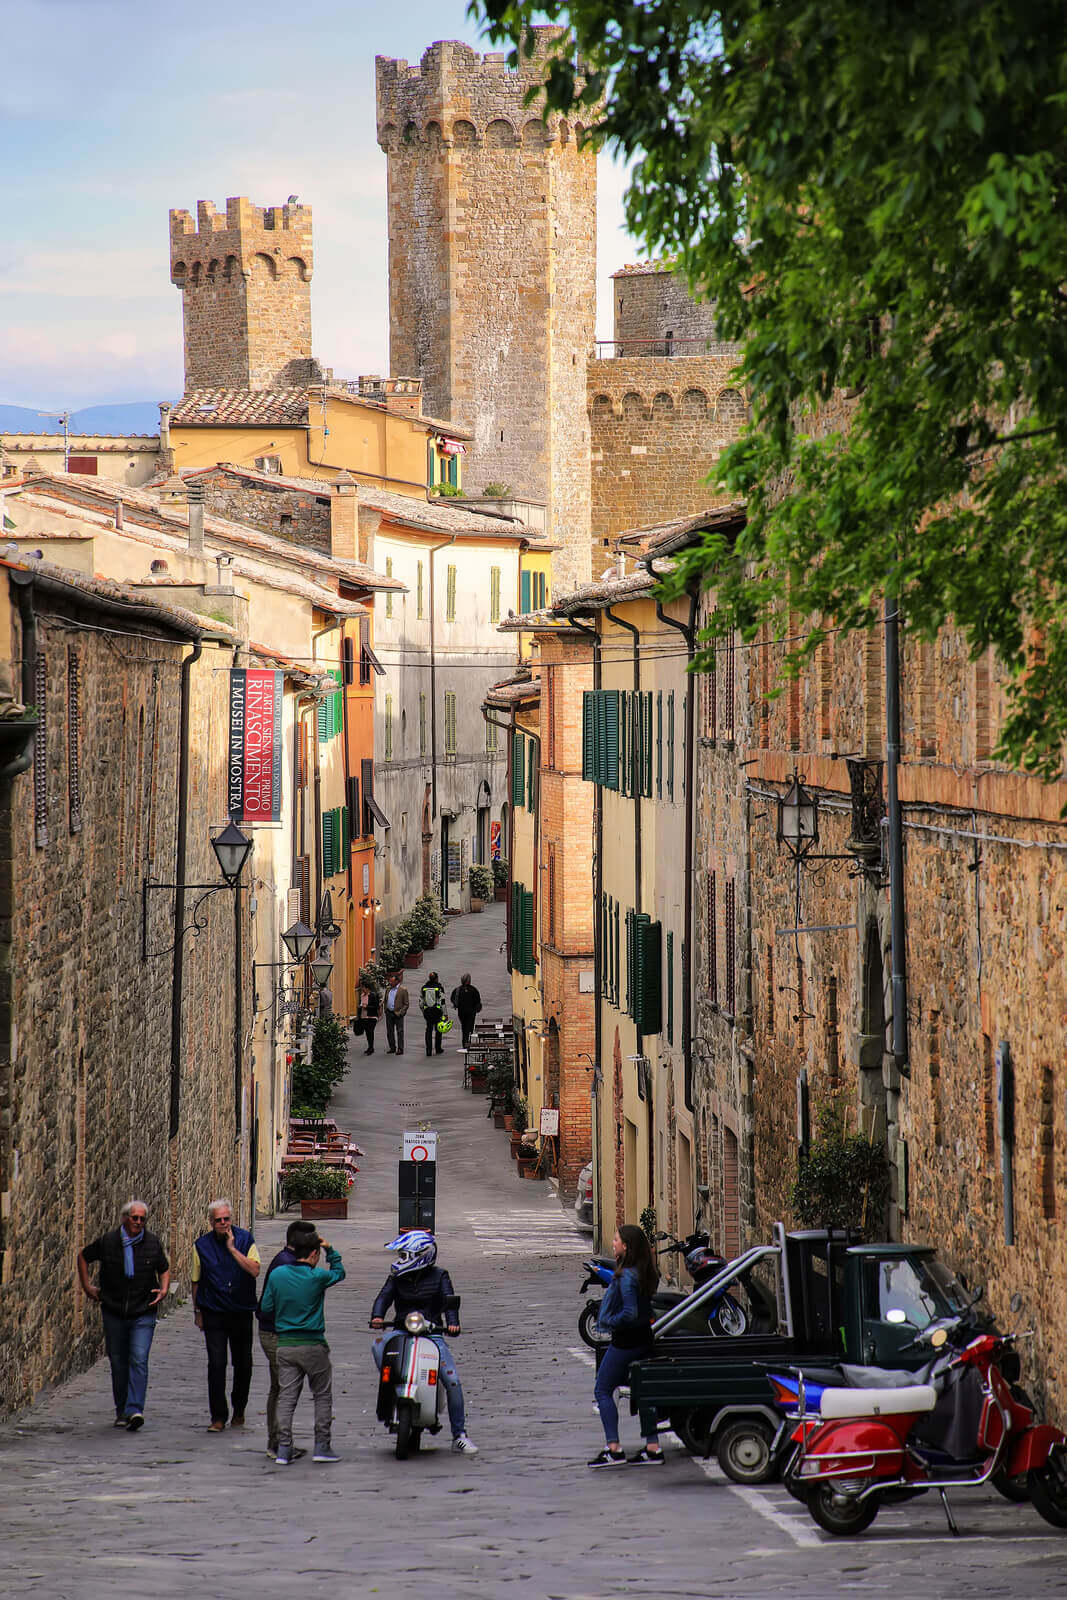 Rua do centro histórico de Montalcino - Toscana. Foto: Donyanedomam / Bigstock